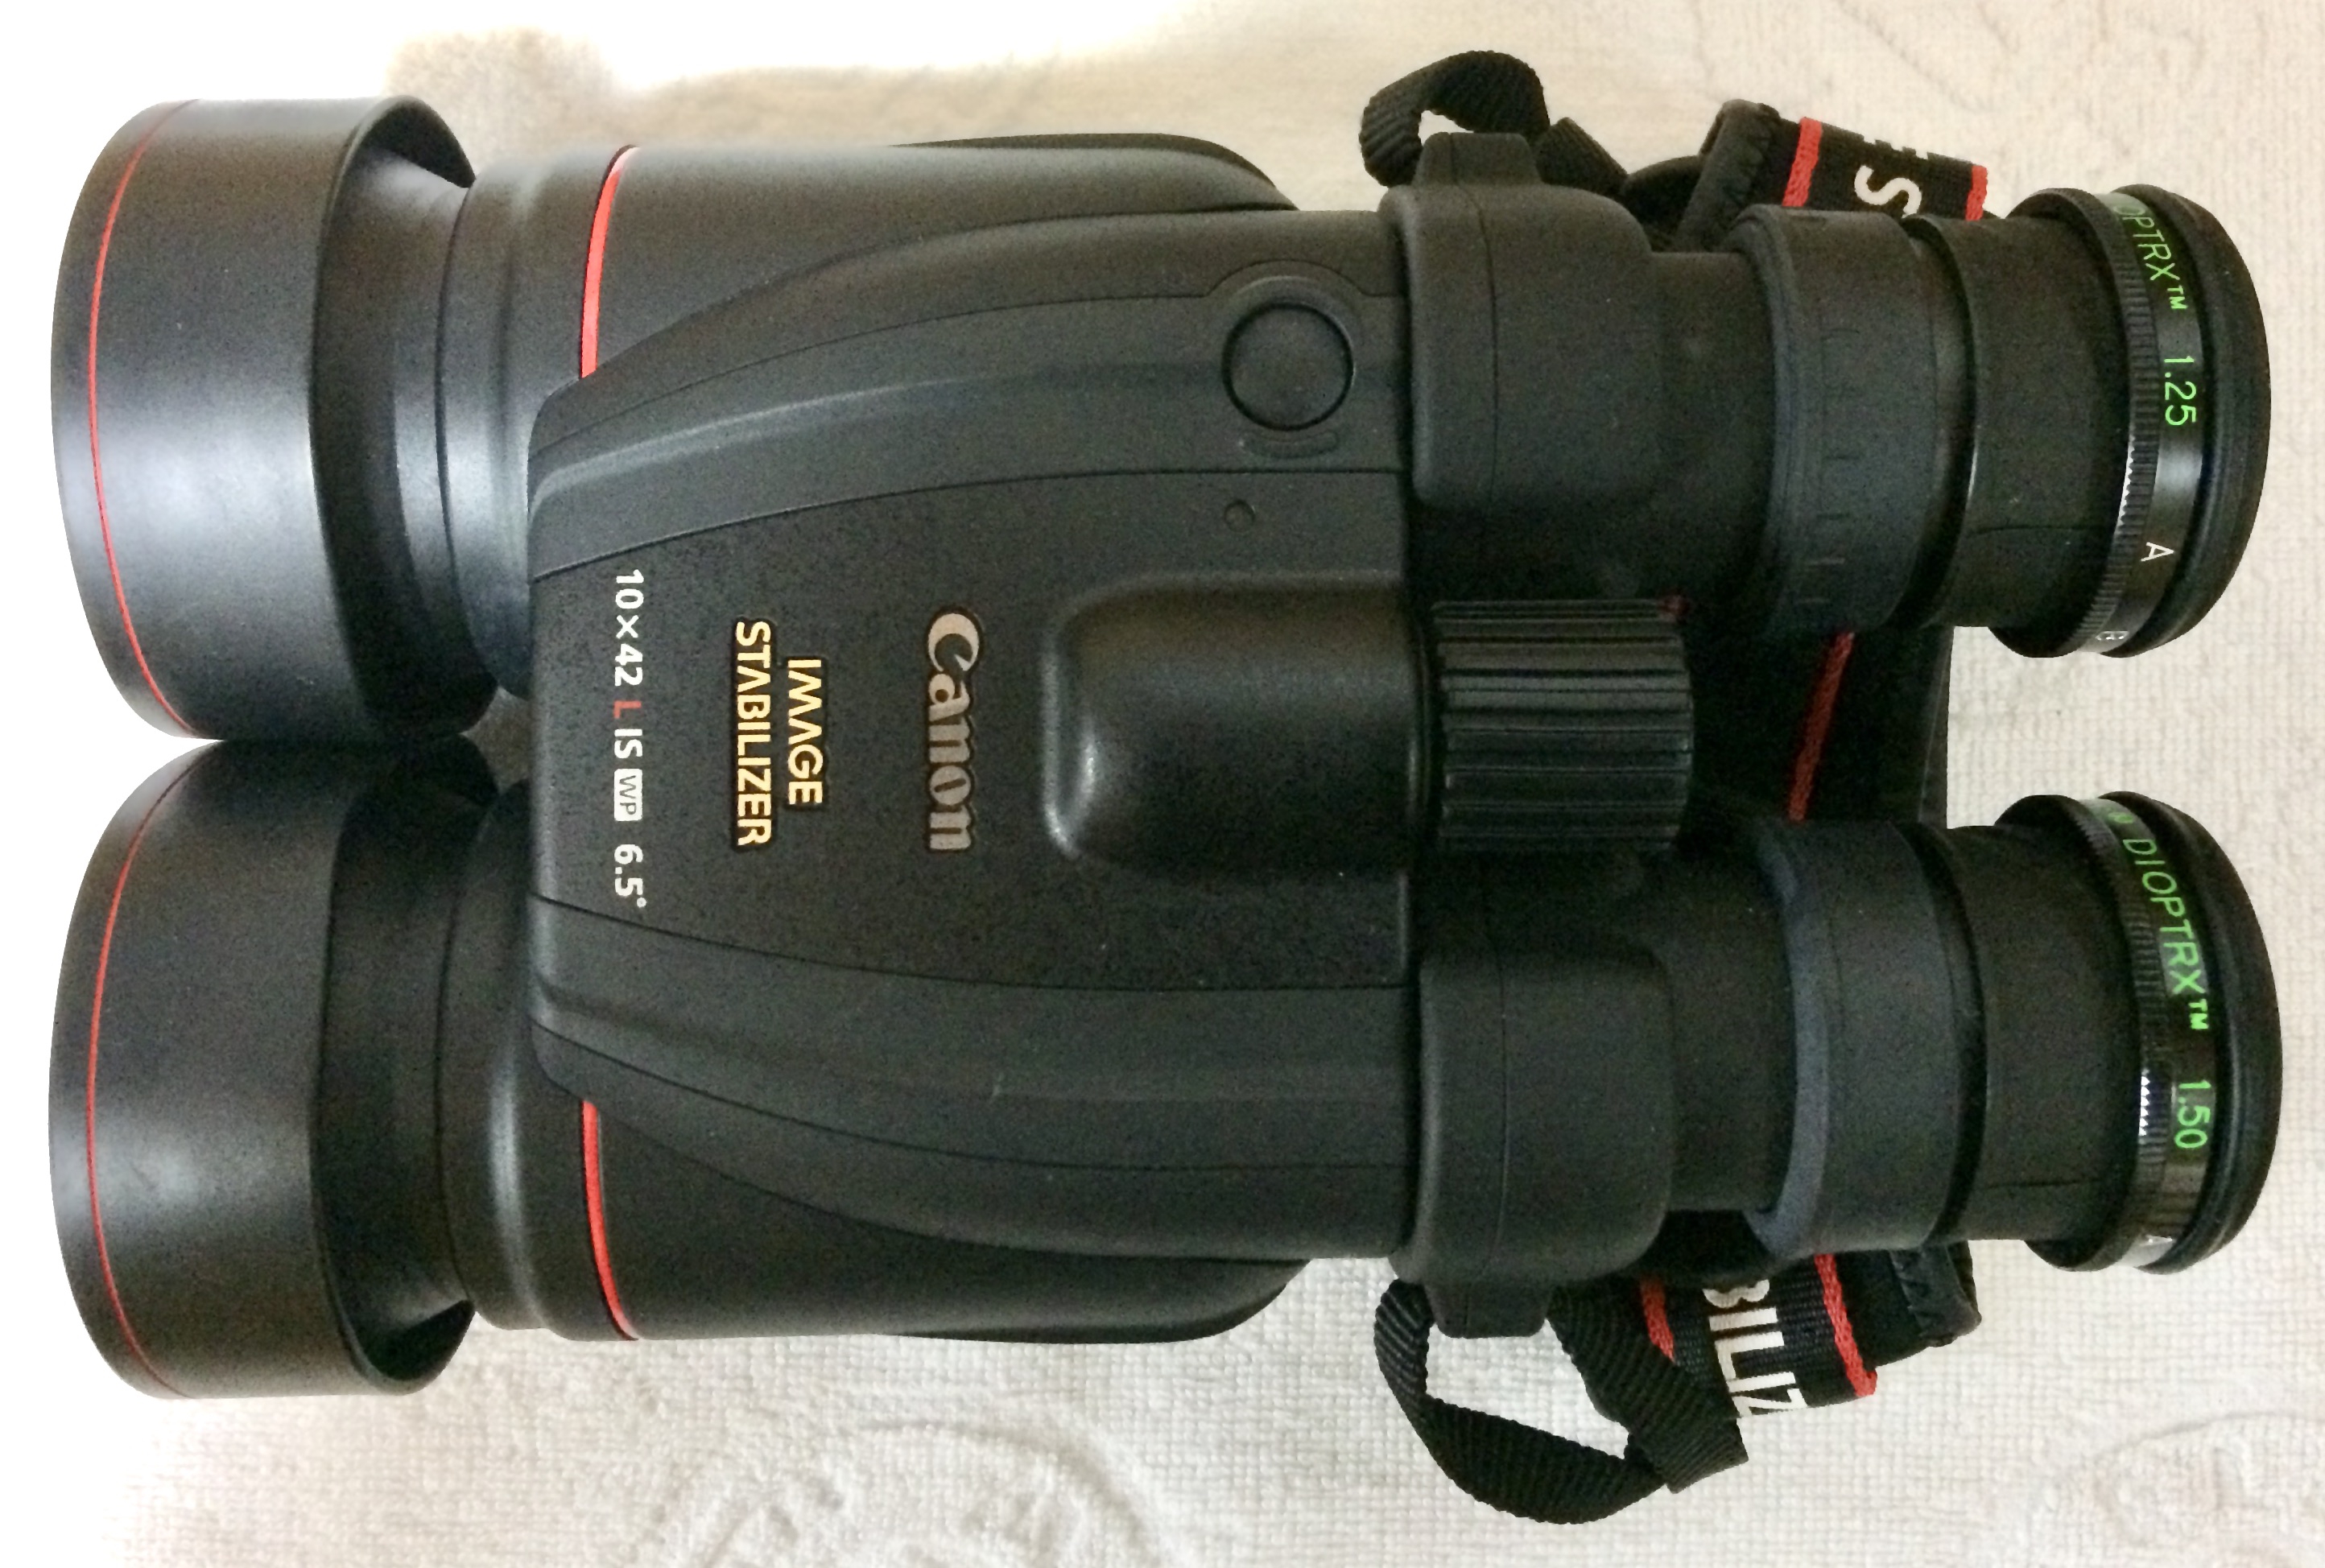 48500円 大切な人へのギフト探し 久さま専用 Canon 10×42L IS WP 双眼鏡